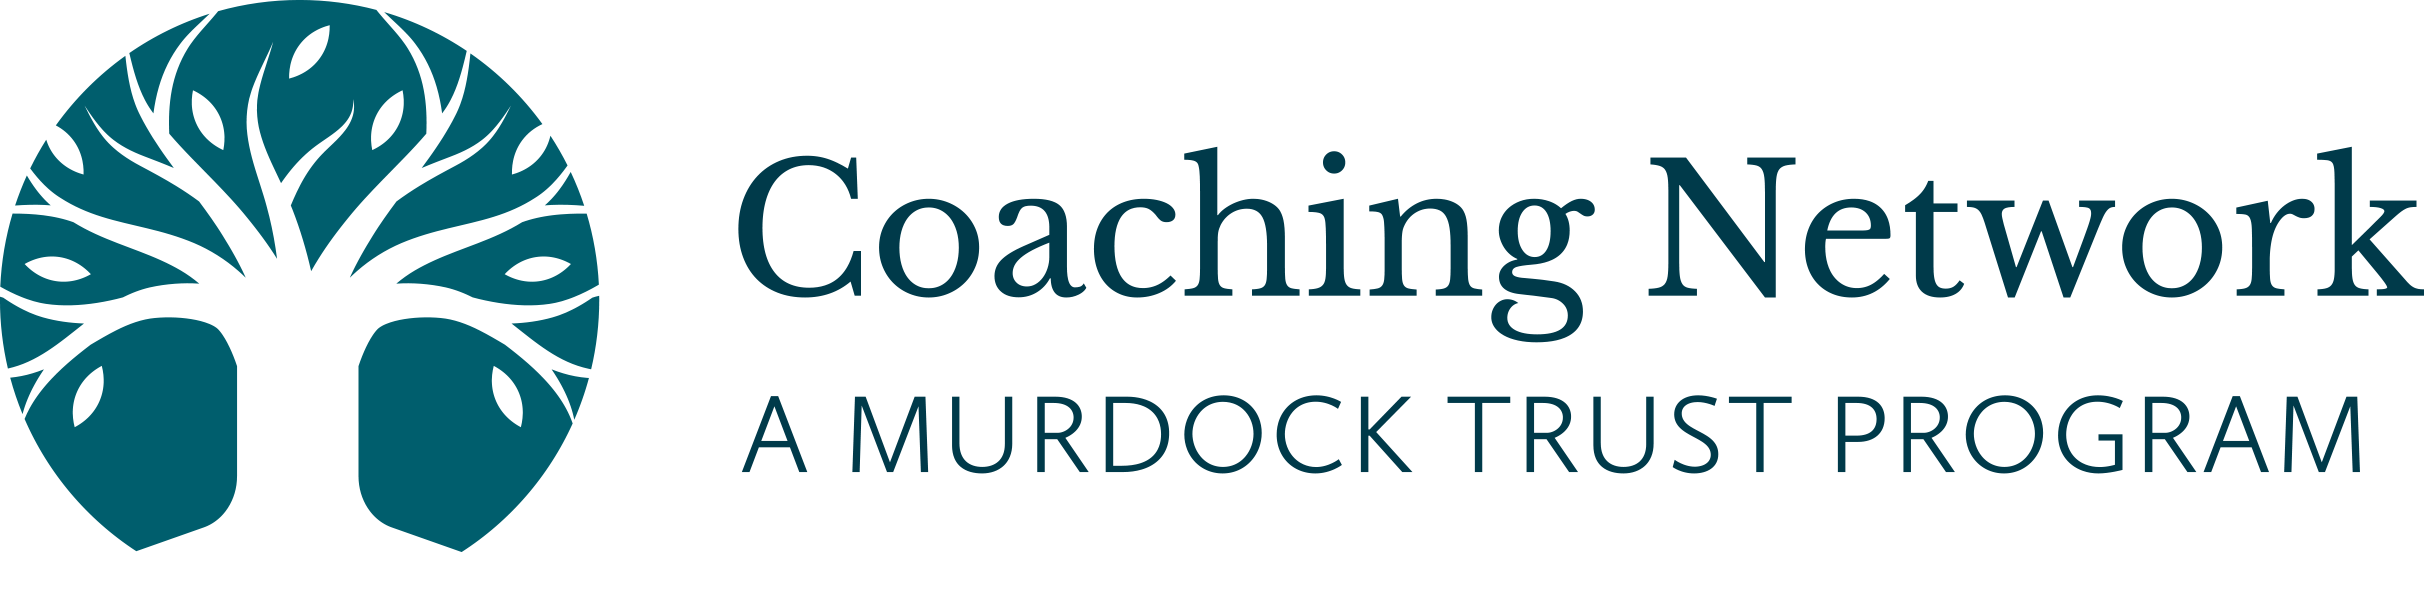 Coaching Network